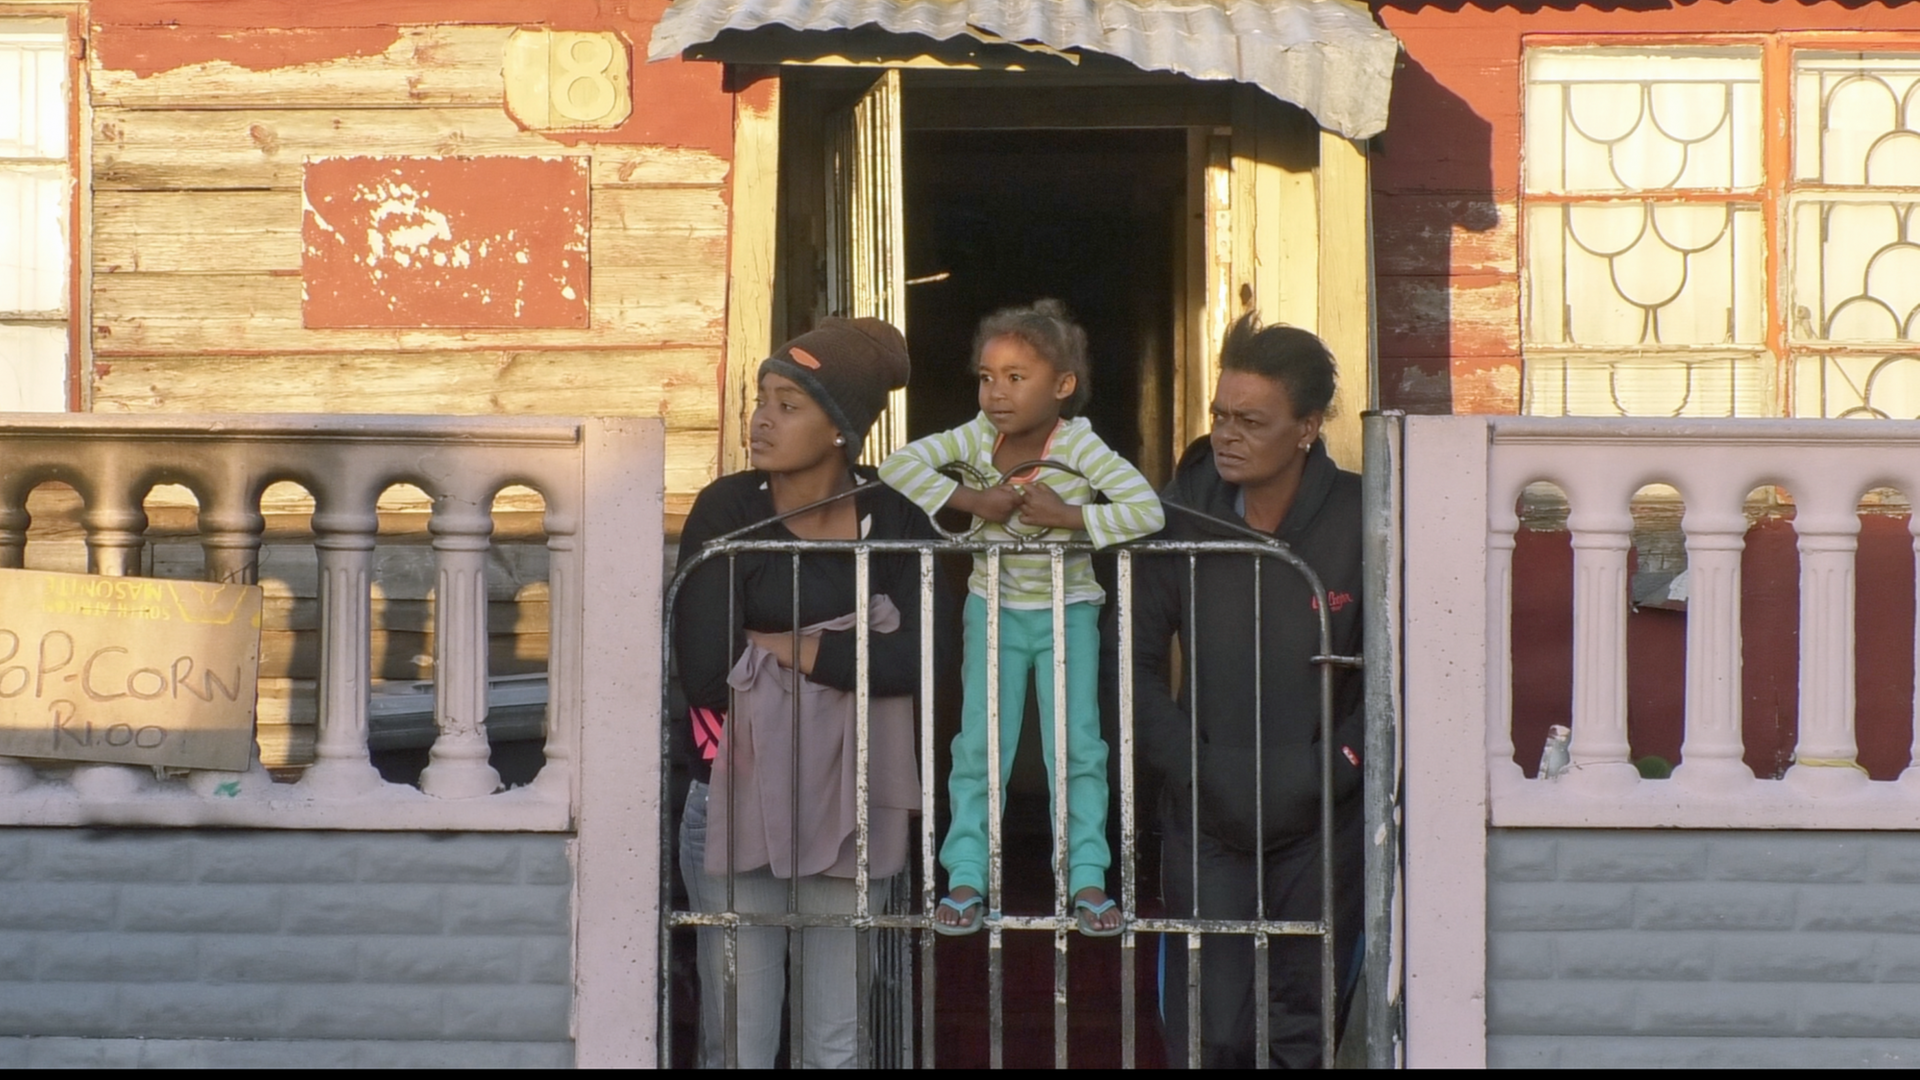 Szene im Stadtteil Manenberg in den Cape Flats von Kapstadt: Zwei Anwohnerinnen mit Kind stehen am Hoftor und schauen die Straße hinunter